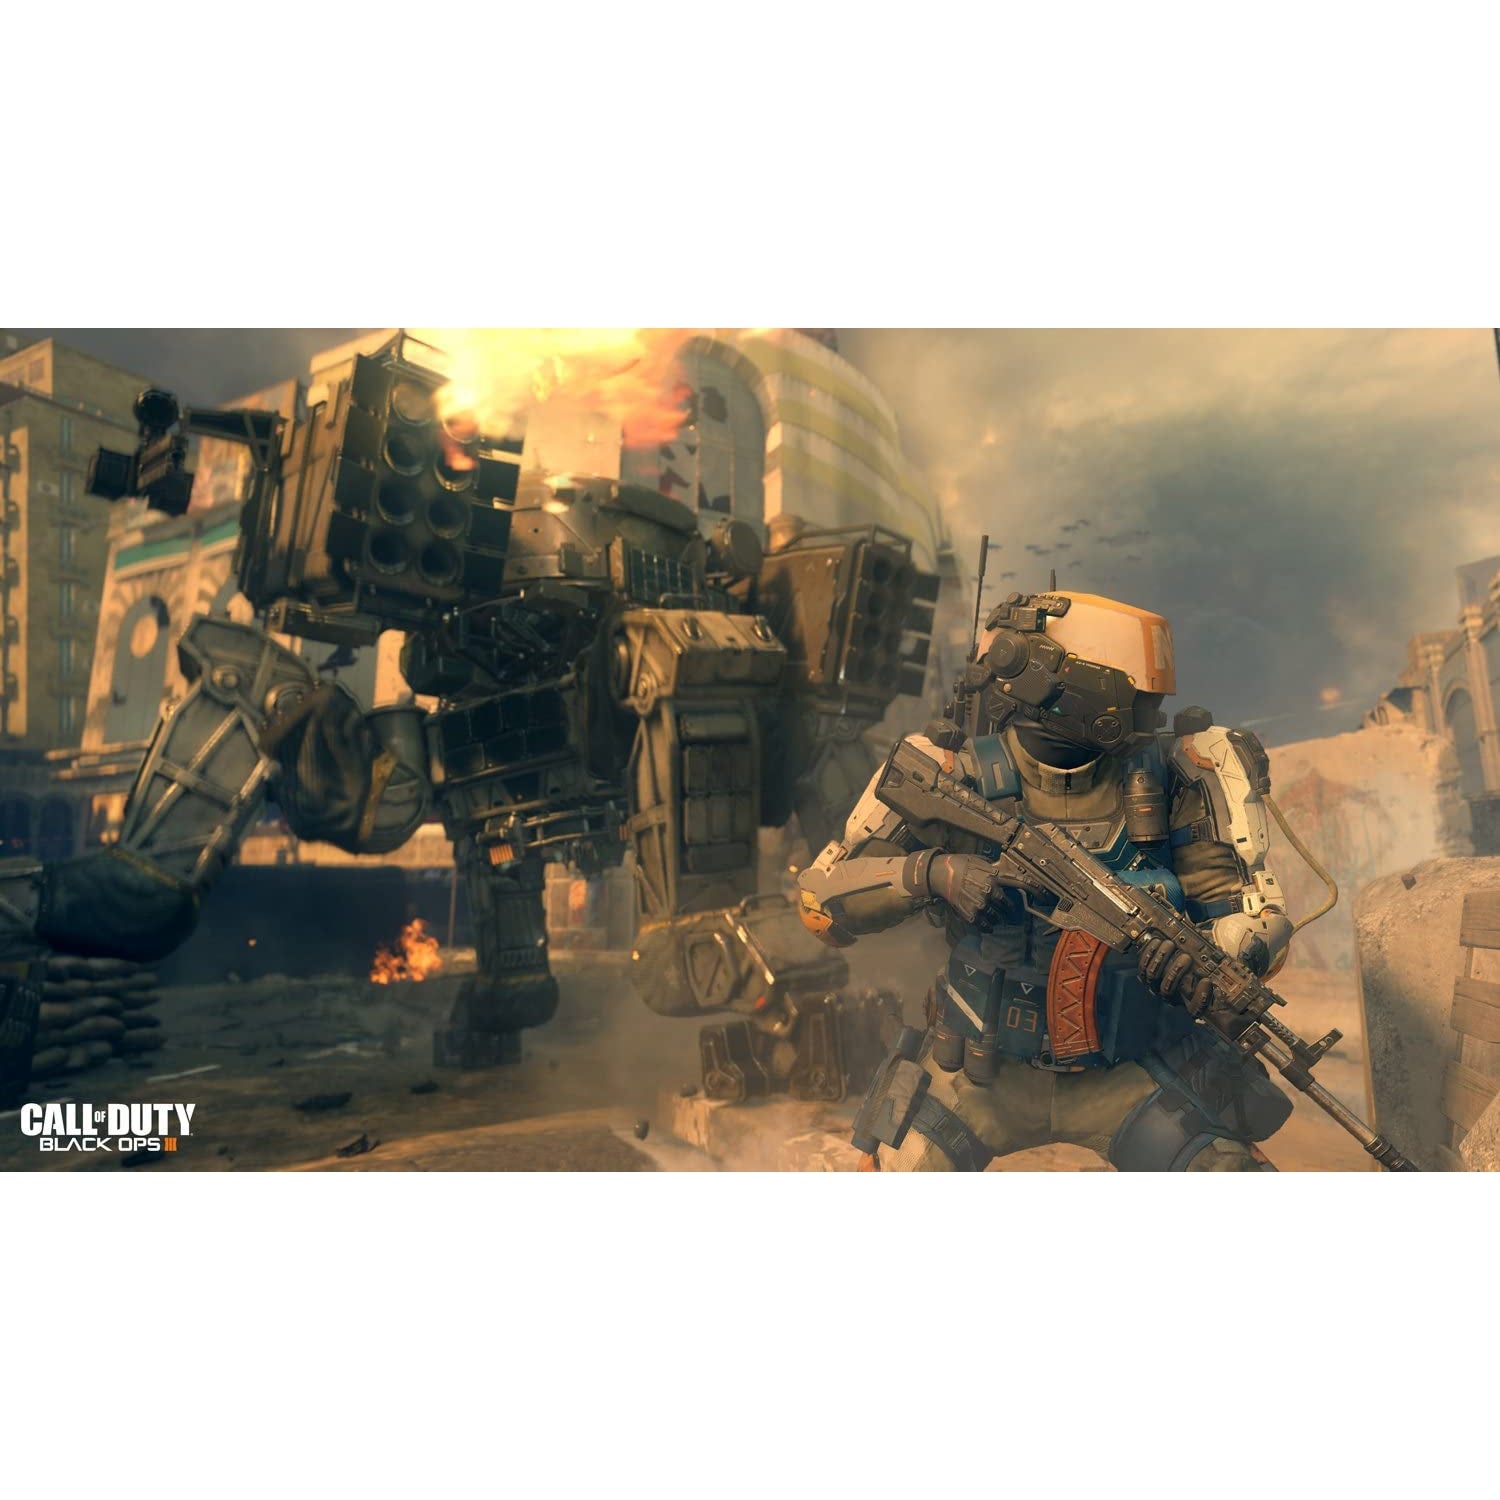 Call of Duty Black Ops III (Xbox One)